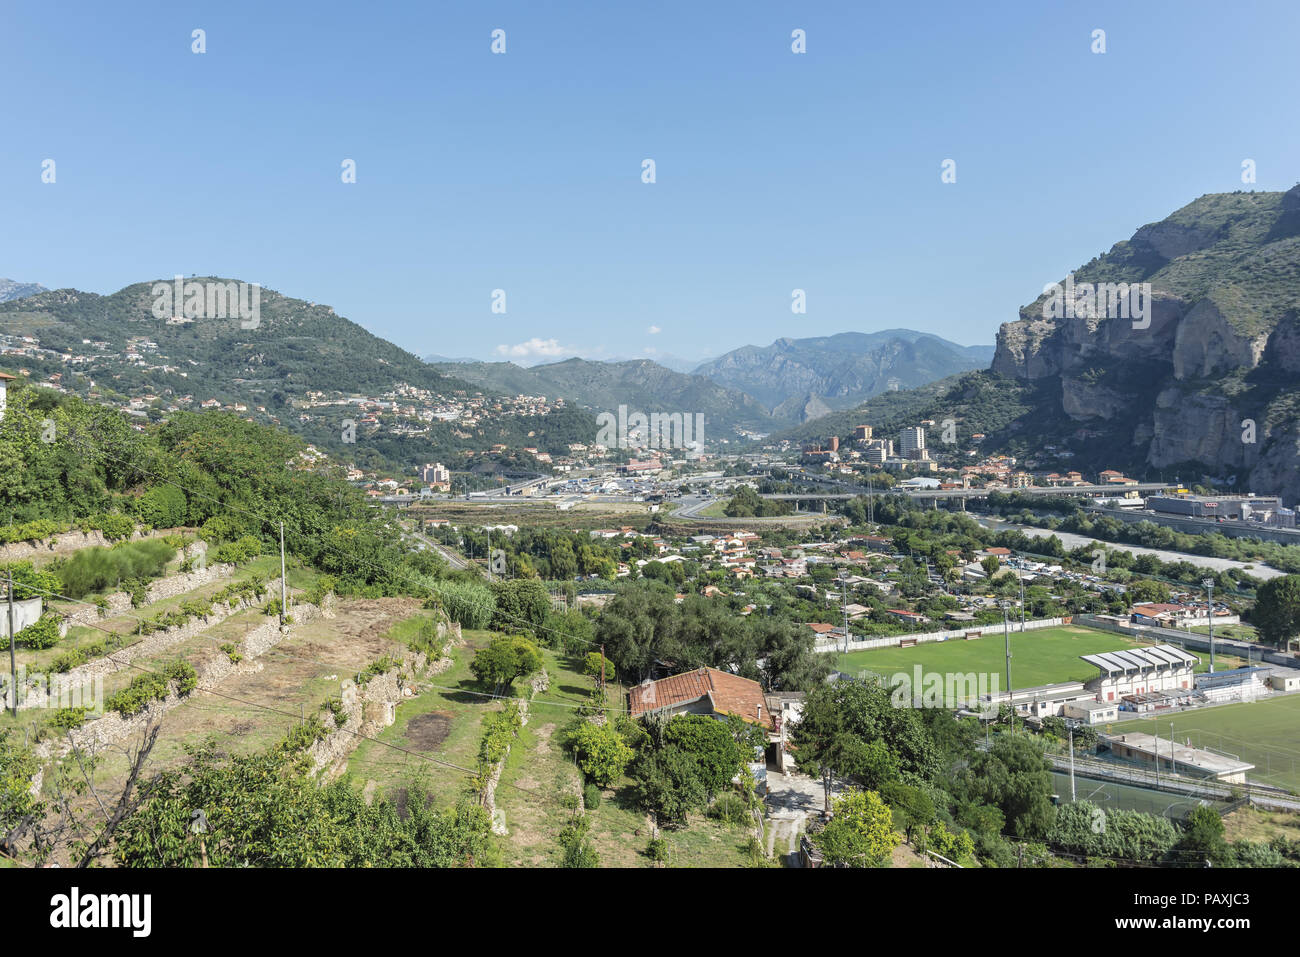 Italy Liguria Ventimiglia valley of the Roia river Stock Photo